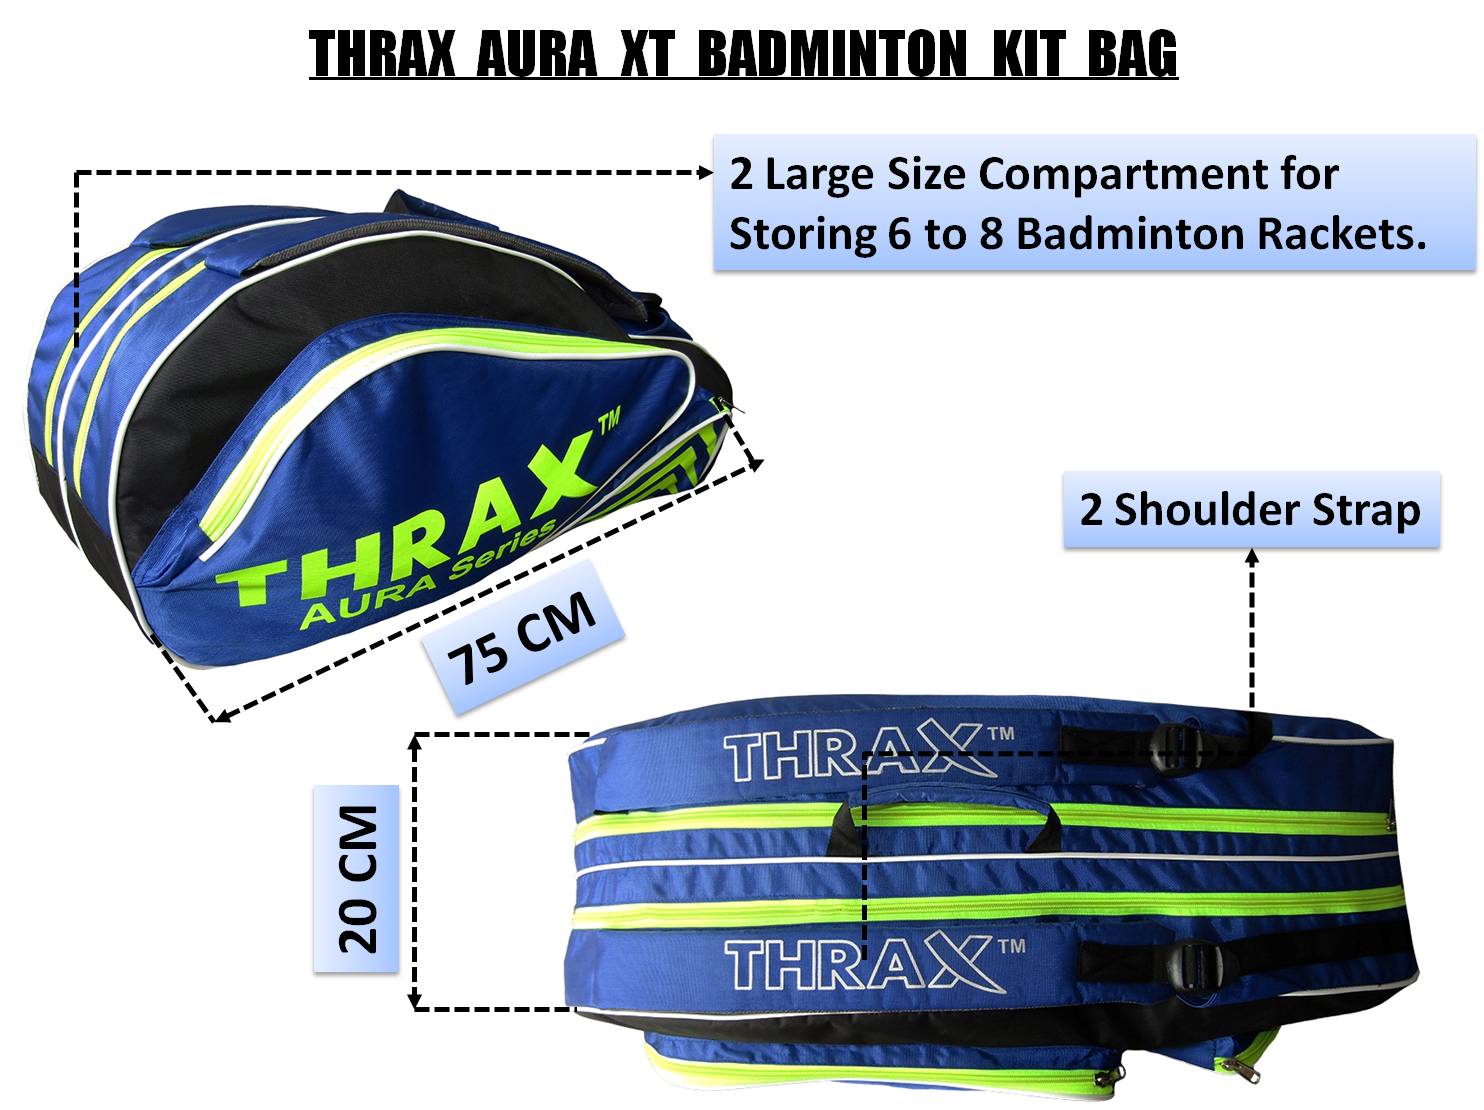 Thrax_Aura_XT_Badminton_Kit_Bag_Technology_1